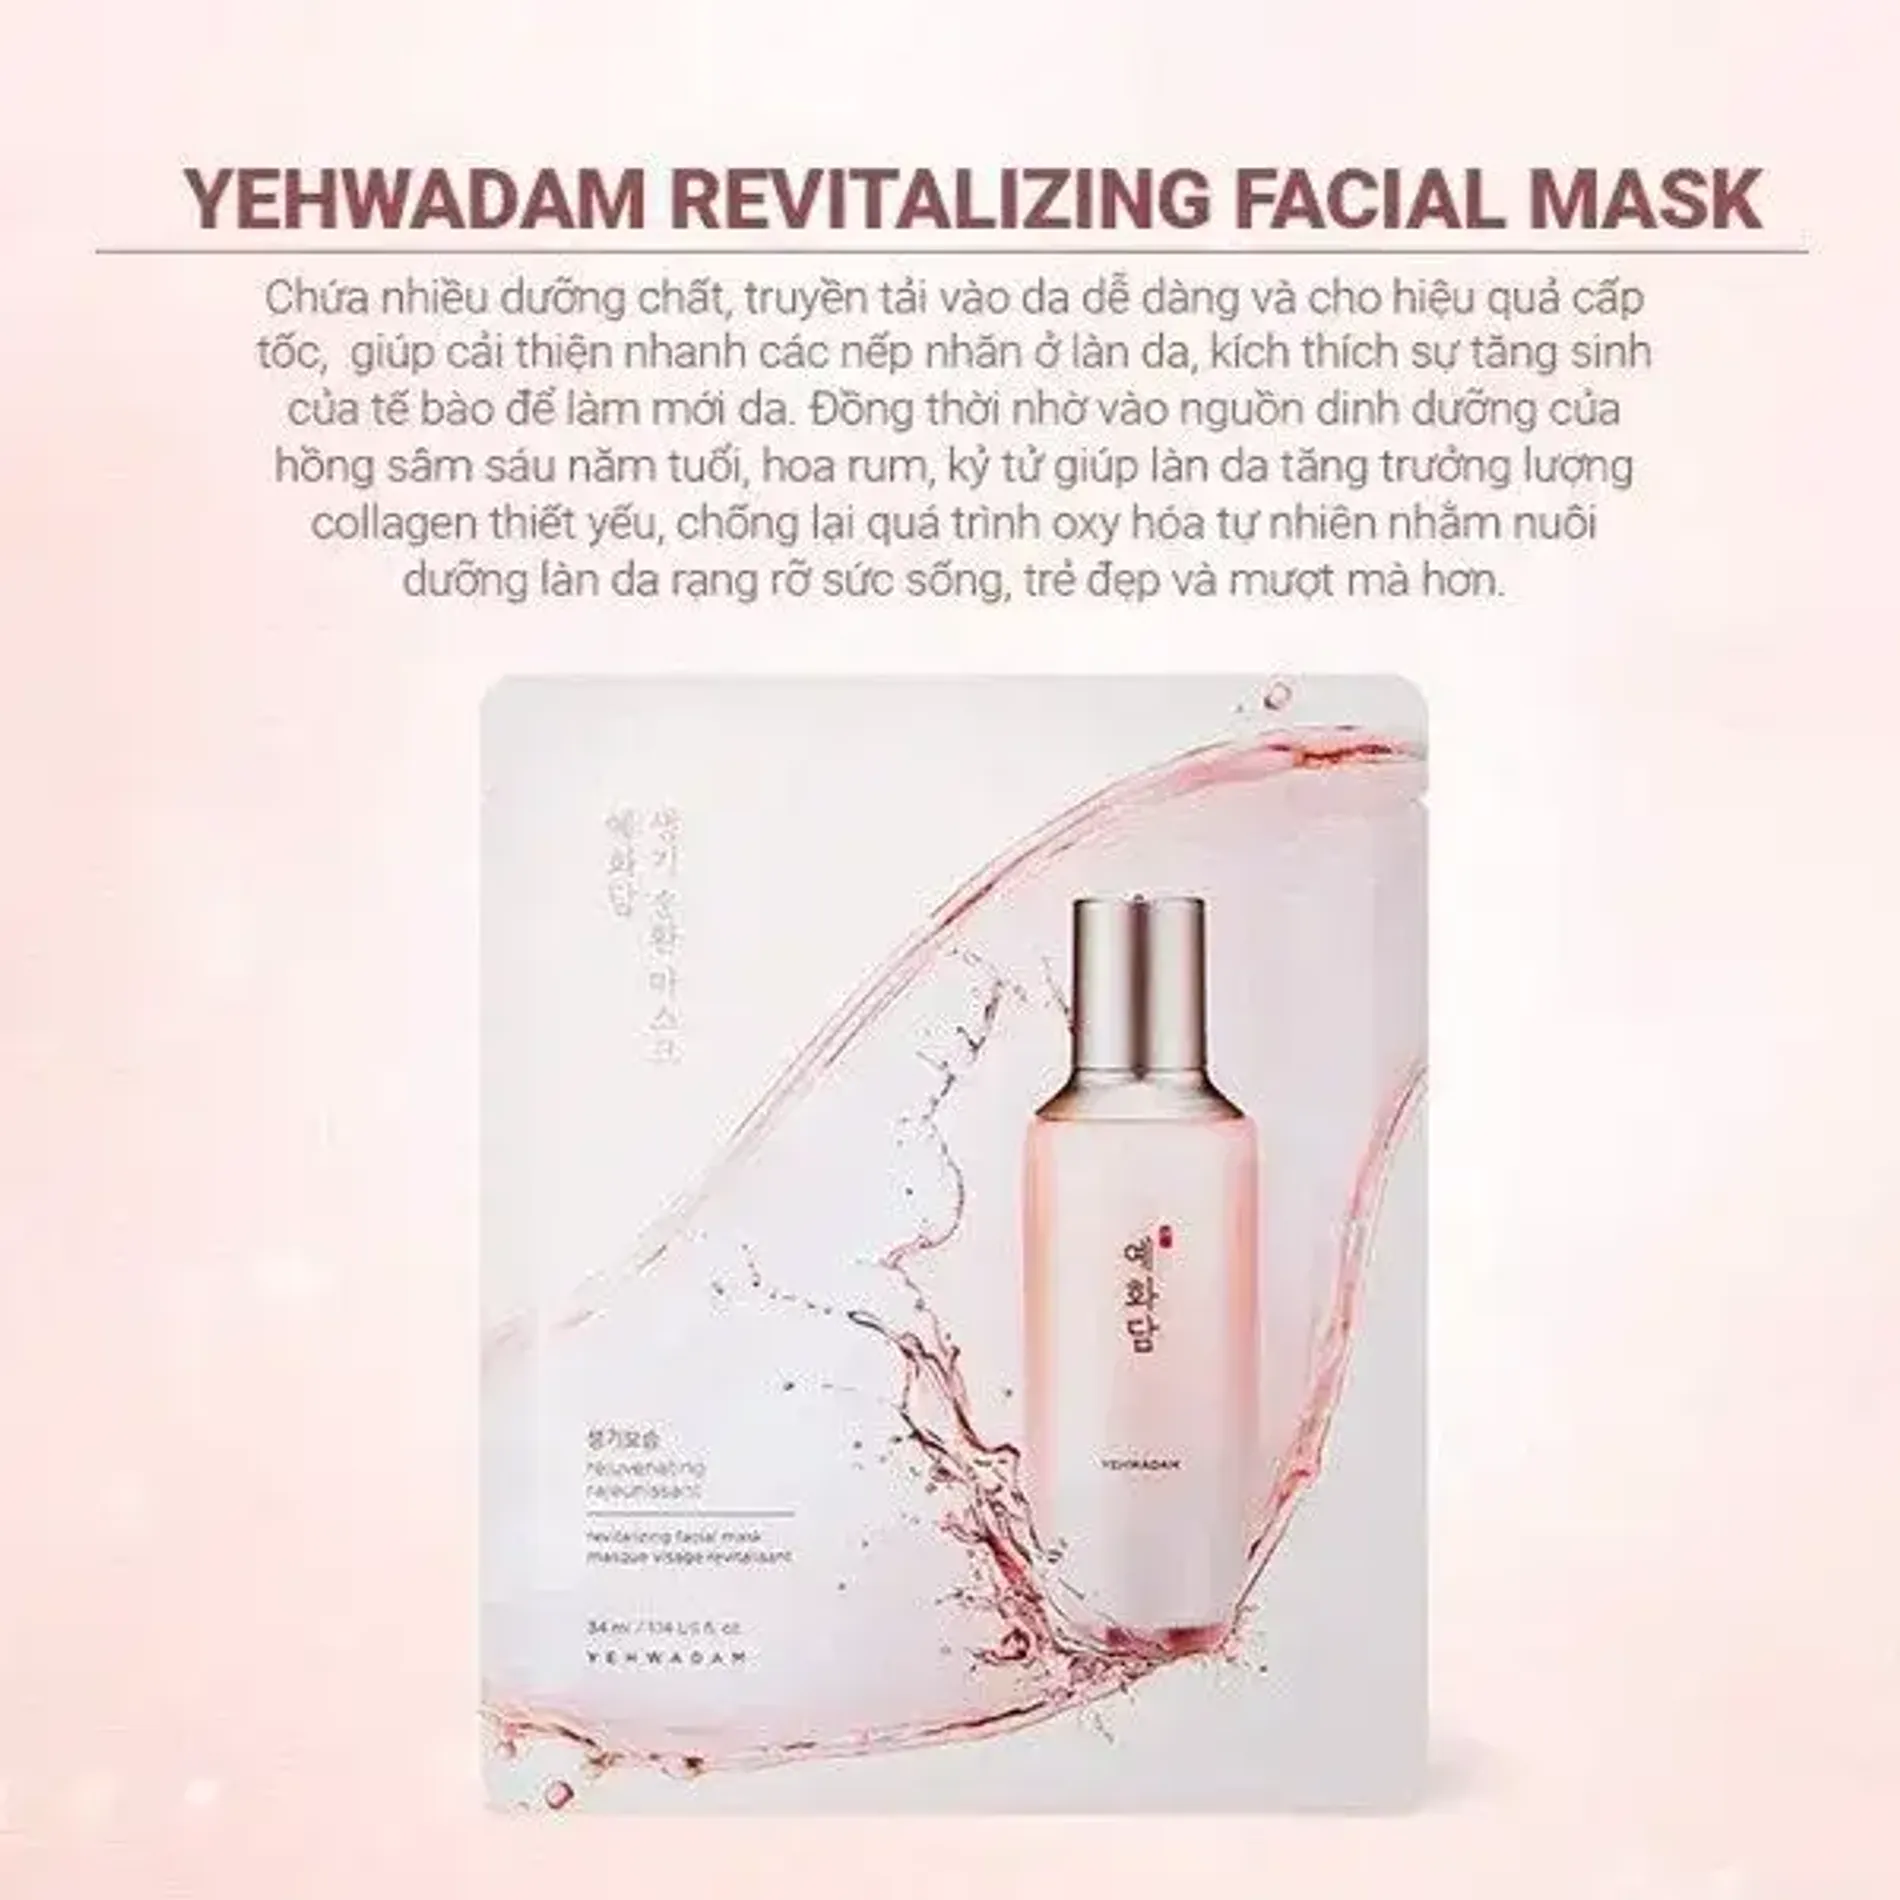 mat-na-duong-da-sang-hong-chong-lao-hoa-thefaceshop-yehwadam-revitalizing-facial-mask-34ml-2